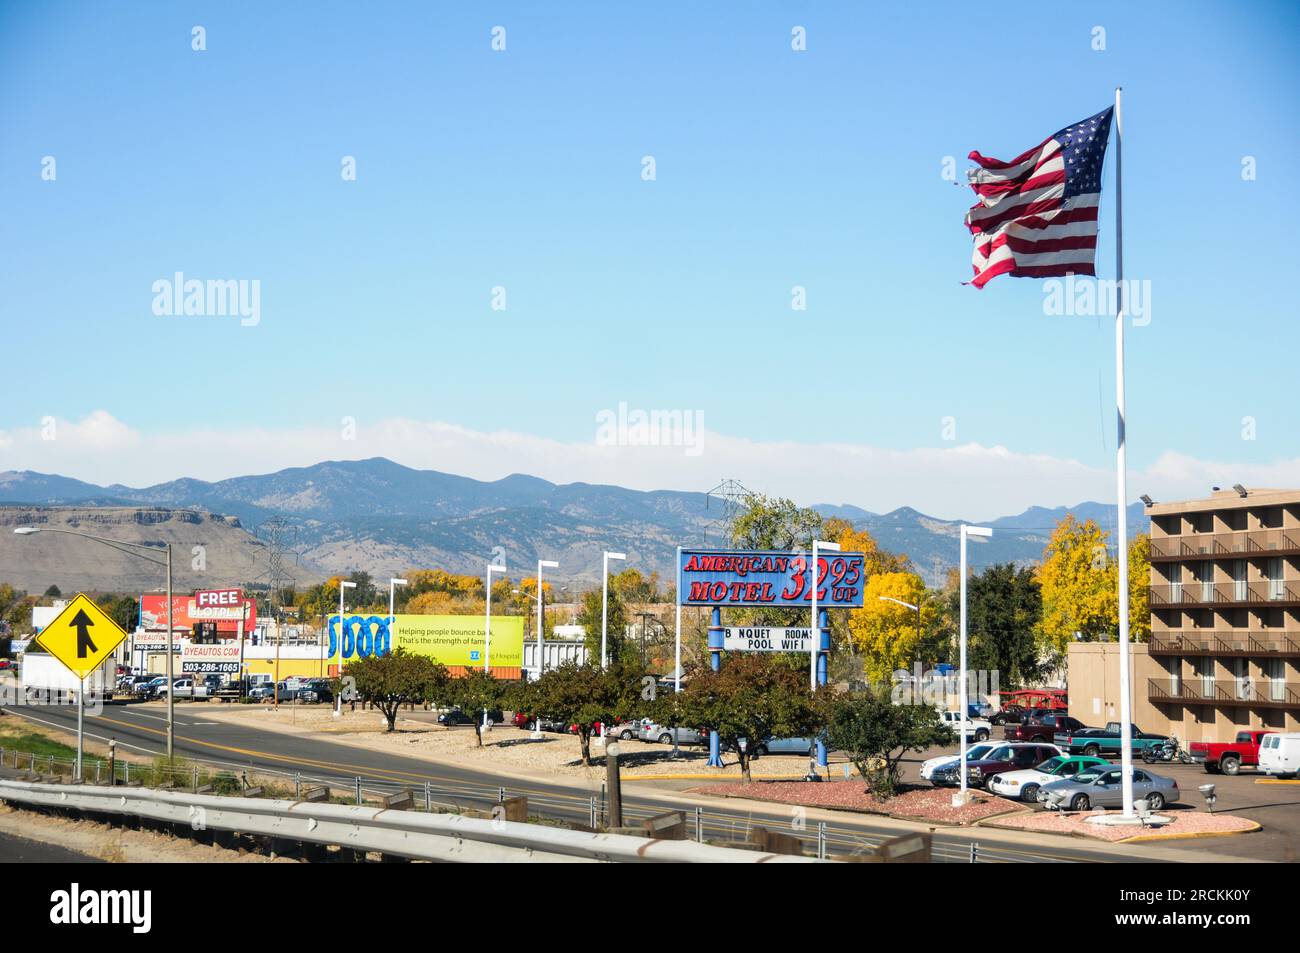 Amerikanische Stadt im mittleren westen mit zerrissener US-Flagge, die im Wind weht Stockfoto